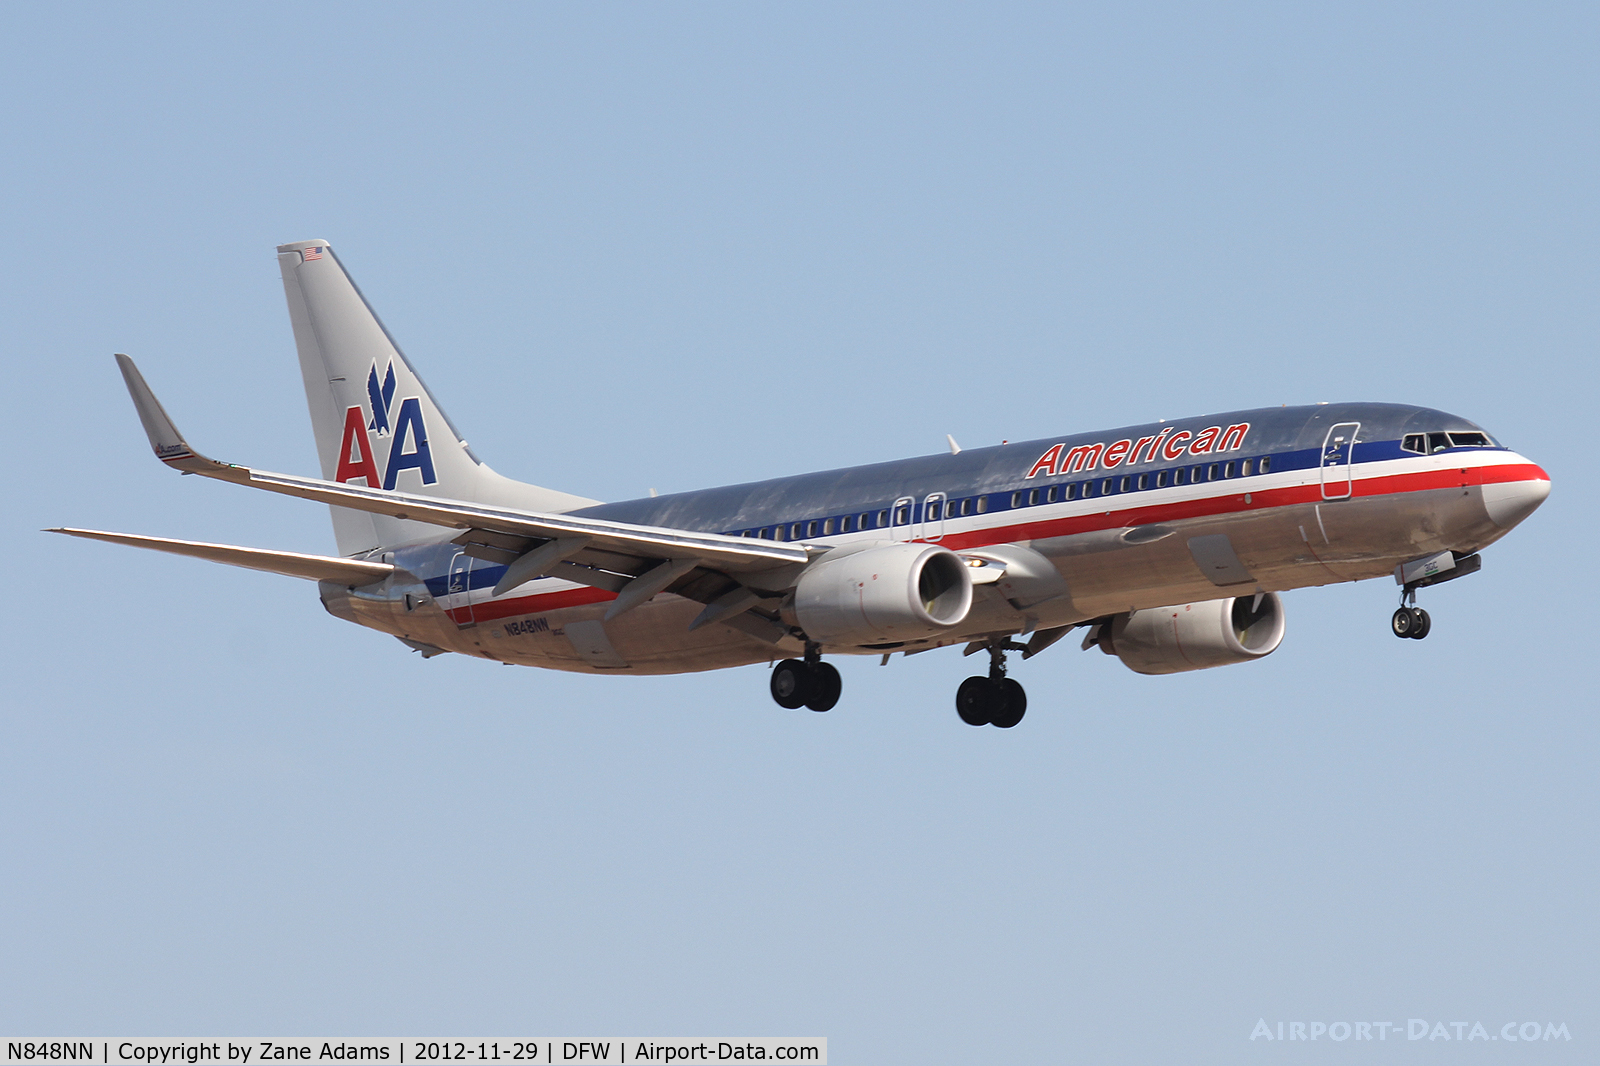 N848NN, 2010 Boeing 737-823 C/N 31103, American Airlines landing at DFW Airport